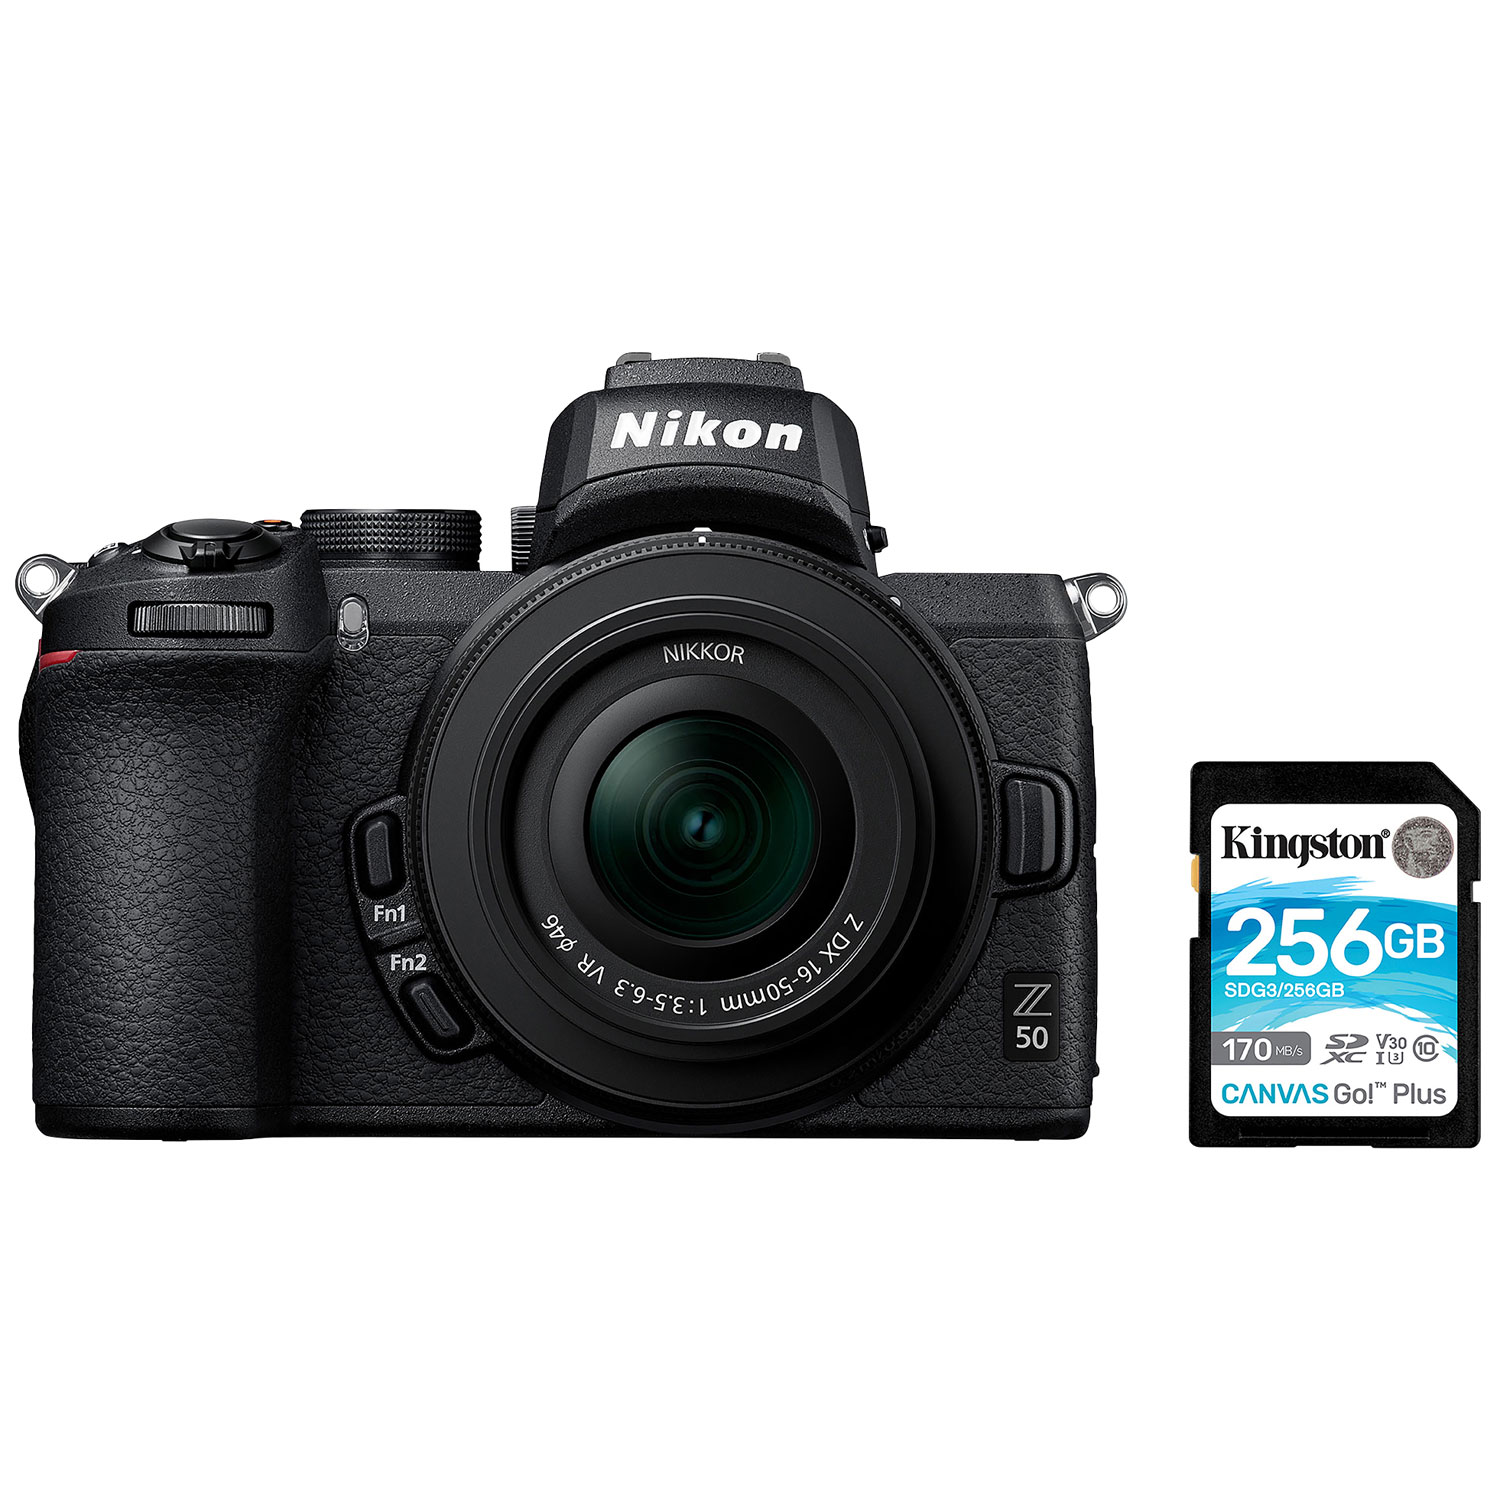 Nikon Z 50 Mirrorless Camera with NIKKOR Z DX 16-50mm f/3.5-6.3 VR Lens Kit & 256GB Memory Card